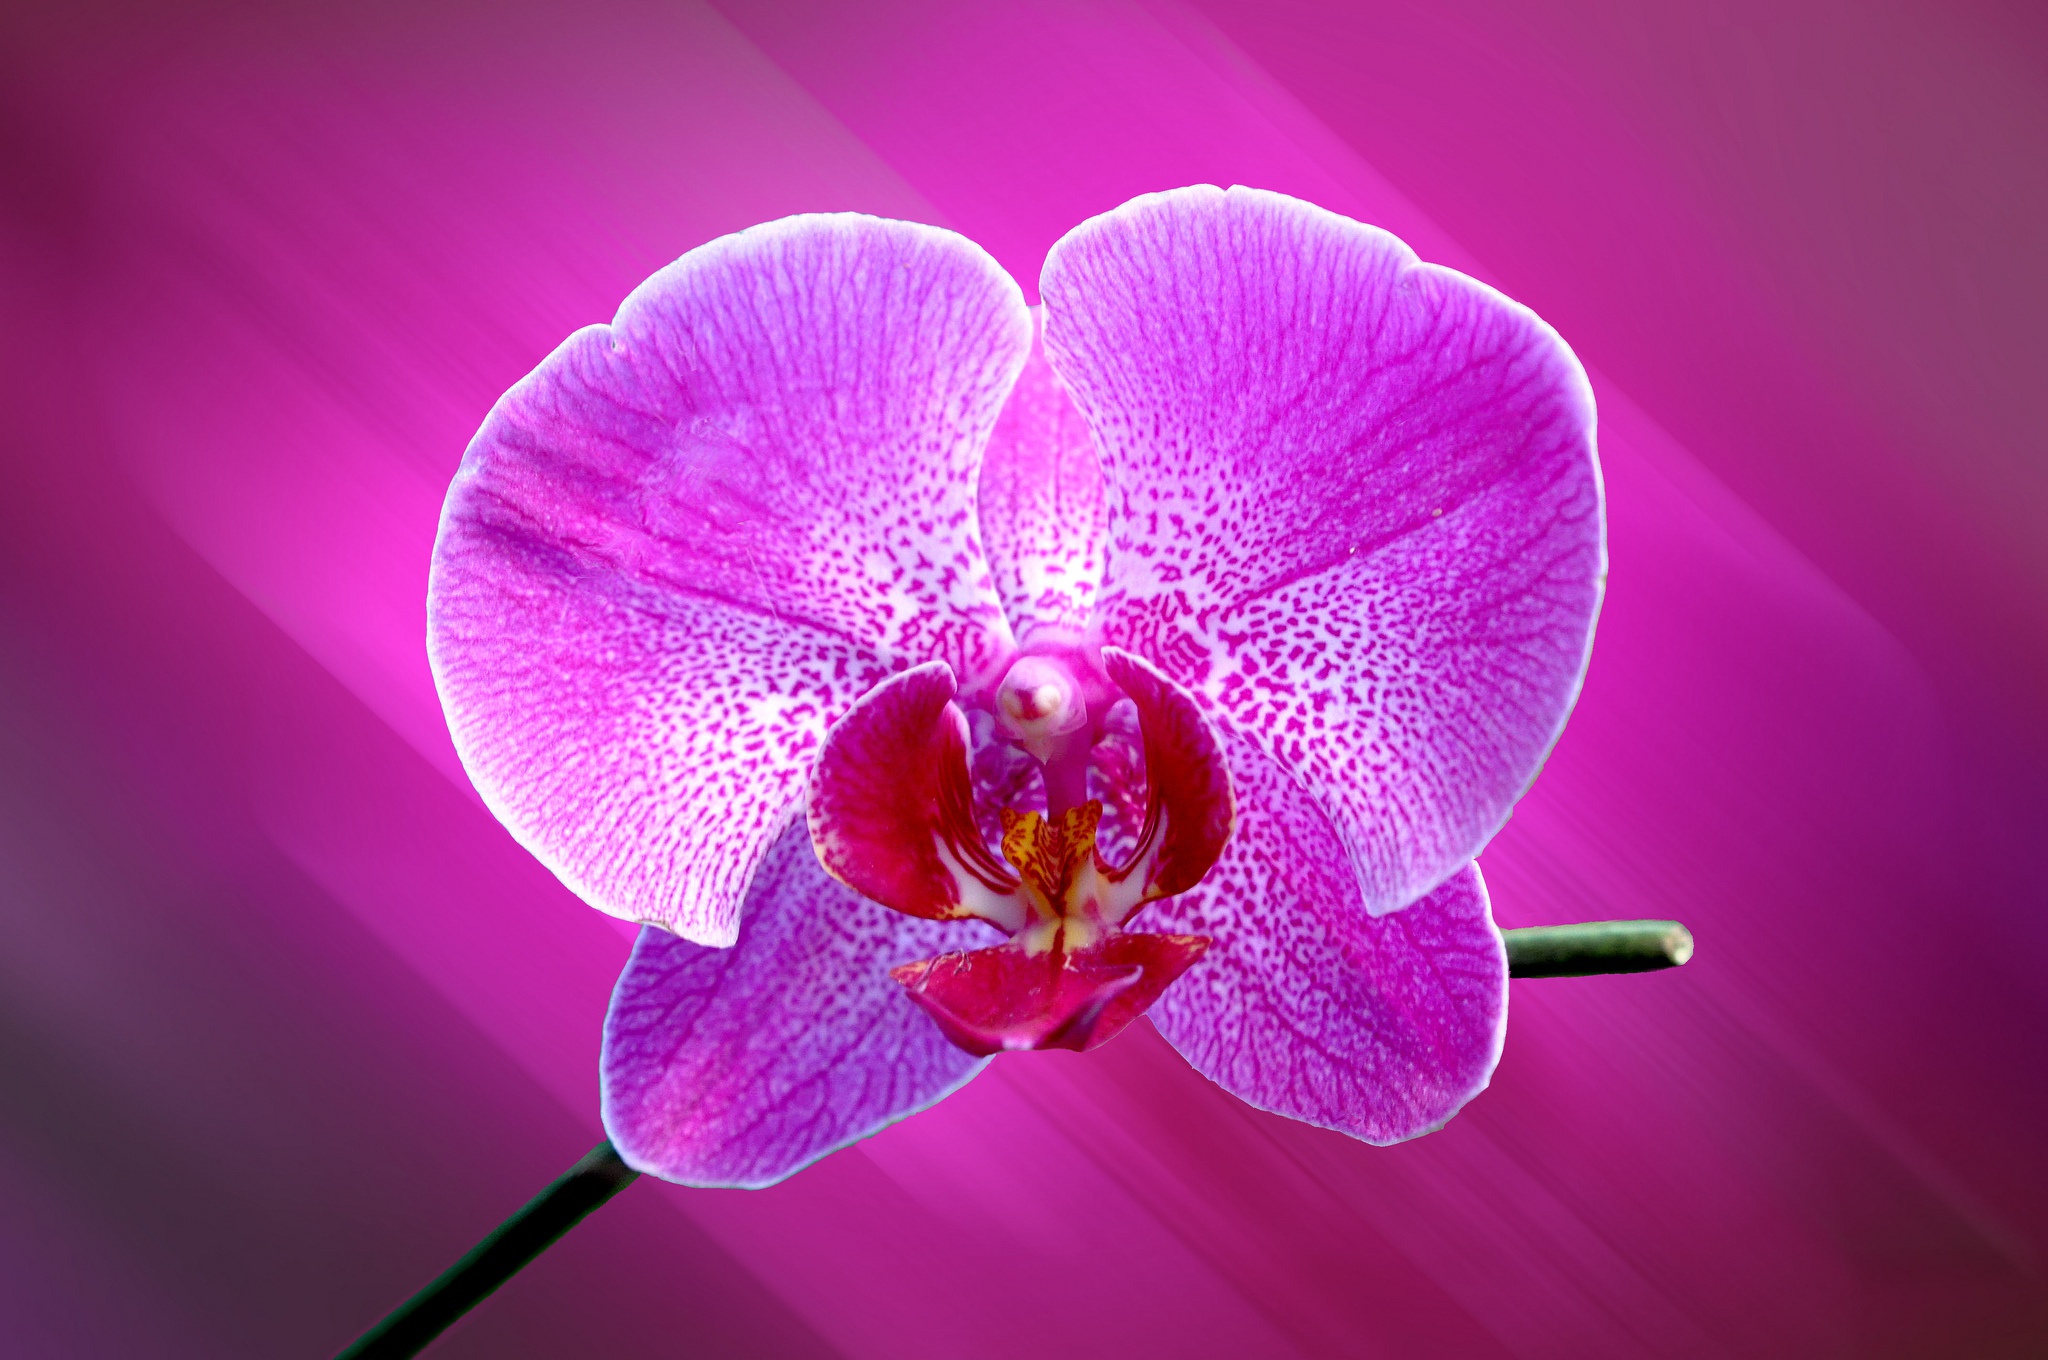 Flowers orchids. Растение фаленопсис. Орхидея фаленопсис Розетта. Фаленопсис 2 ствола. Орхидея фаленопсис розово-сиреневая.